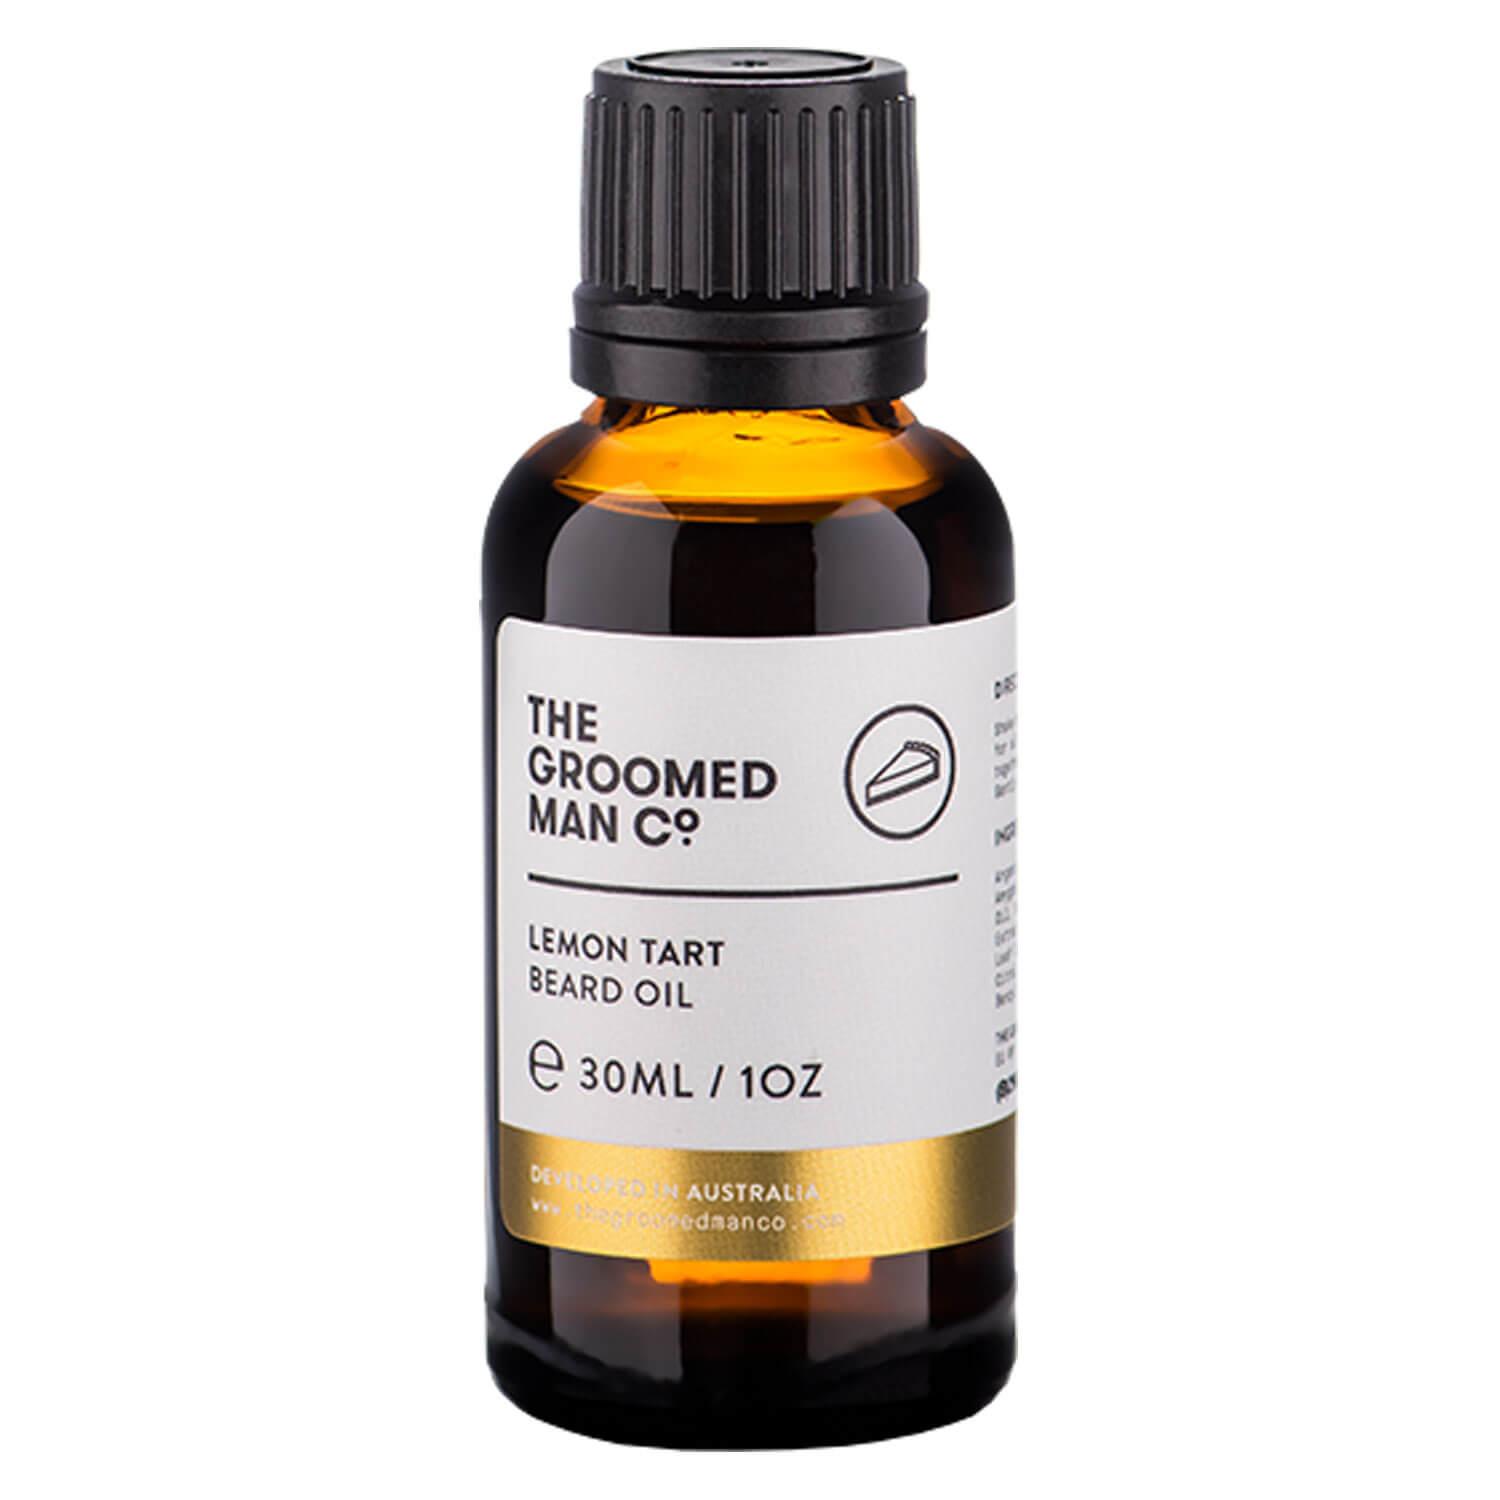 THE GROOMED MAN CO. - Lemontart Beard Oil